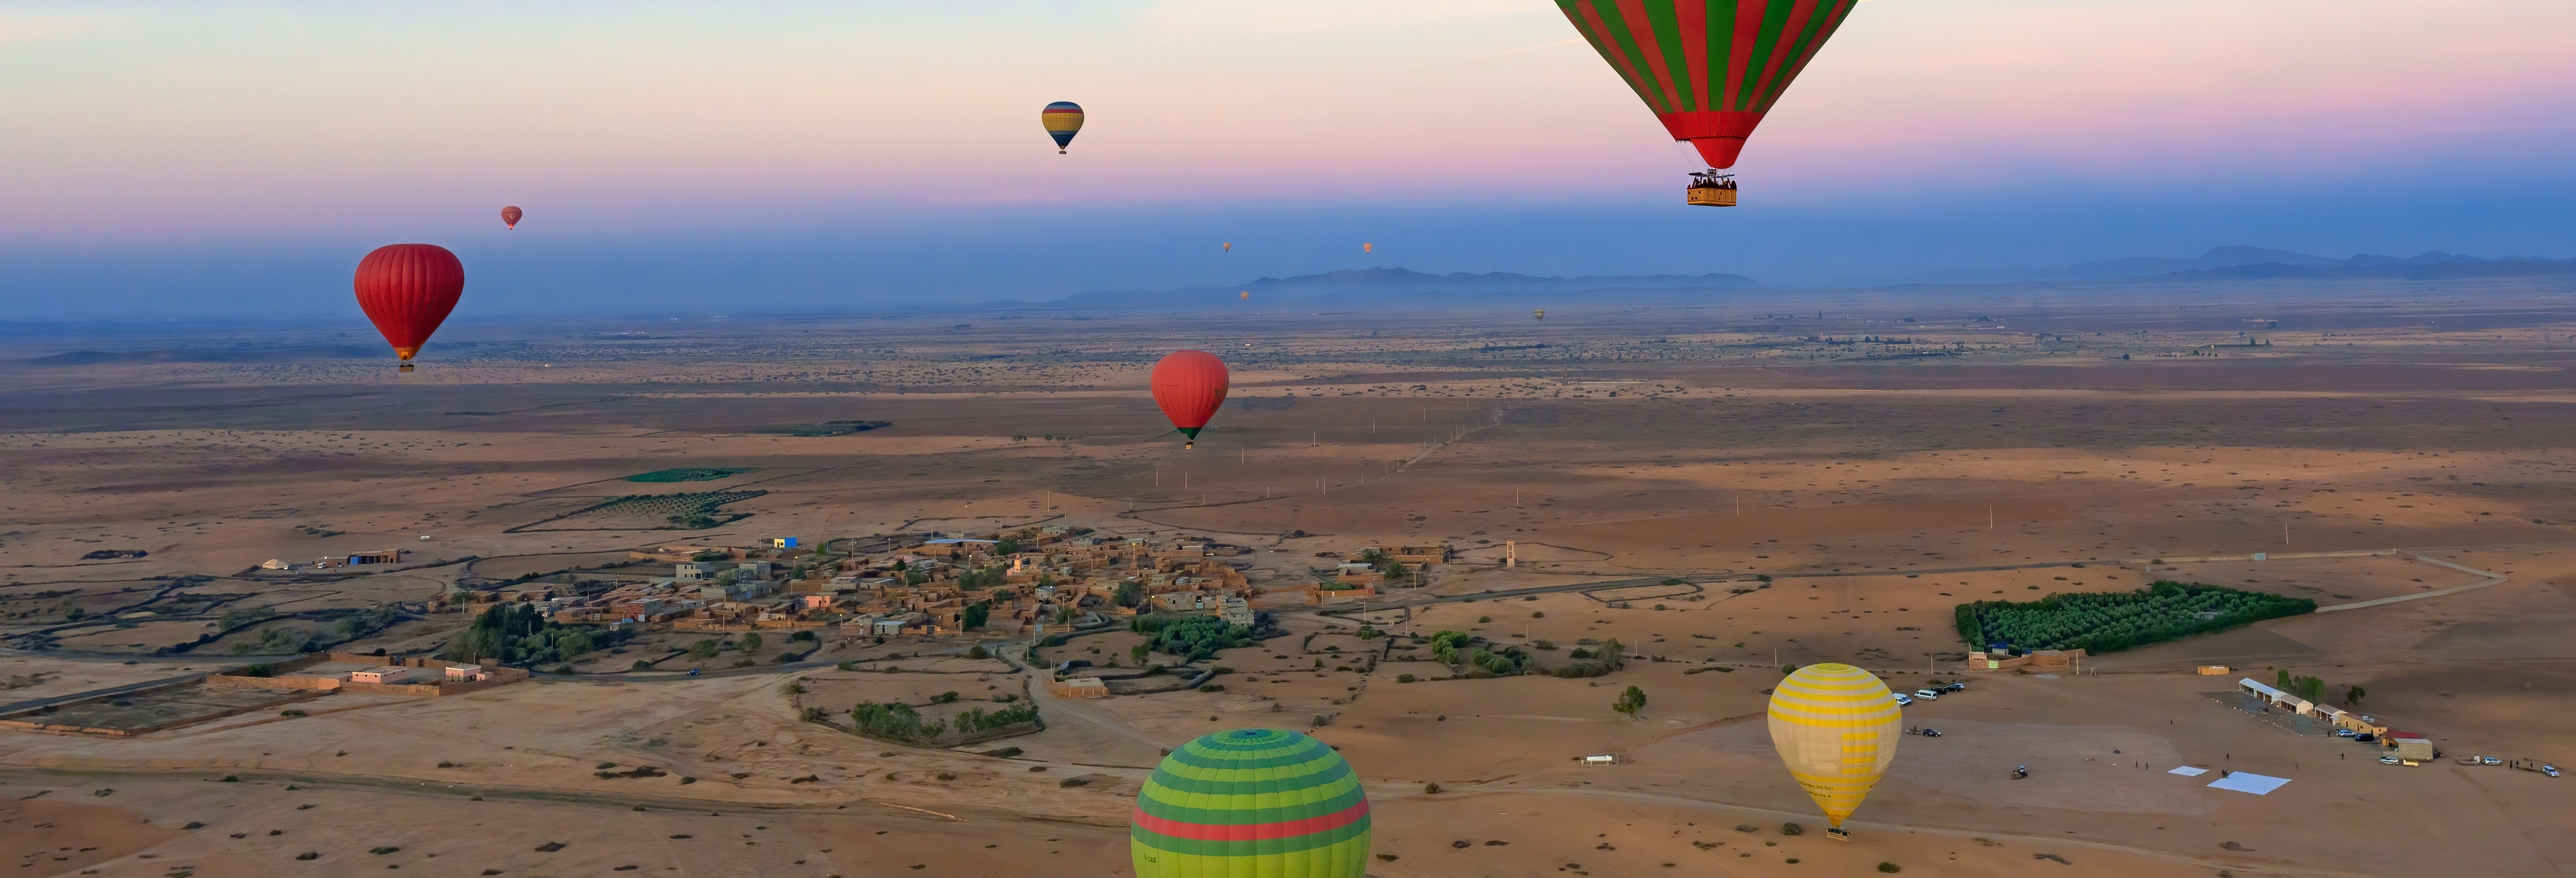 Vol en montgolfière au-dessus de Marrakech